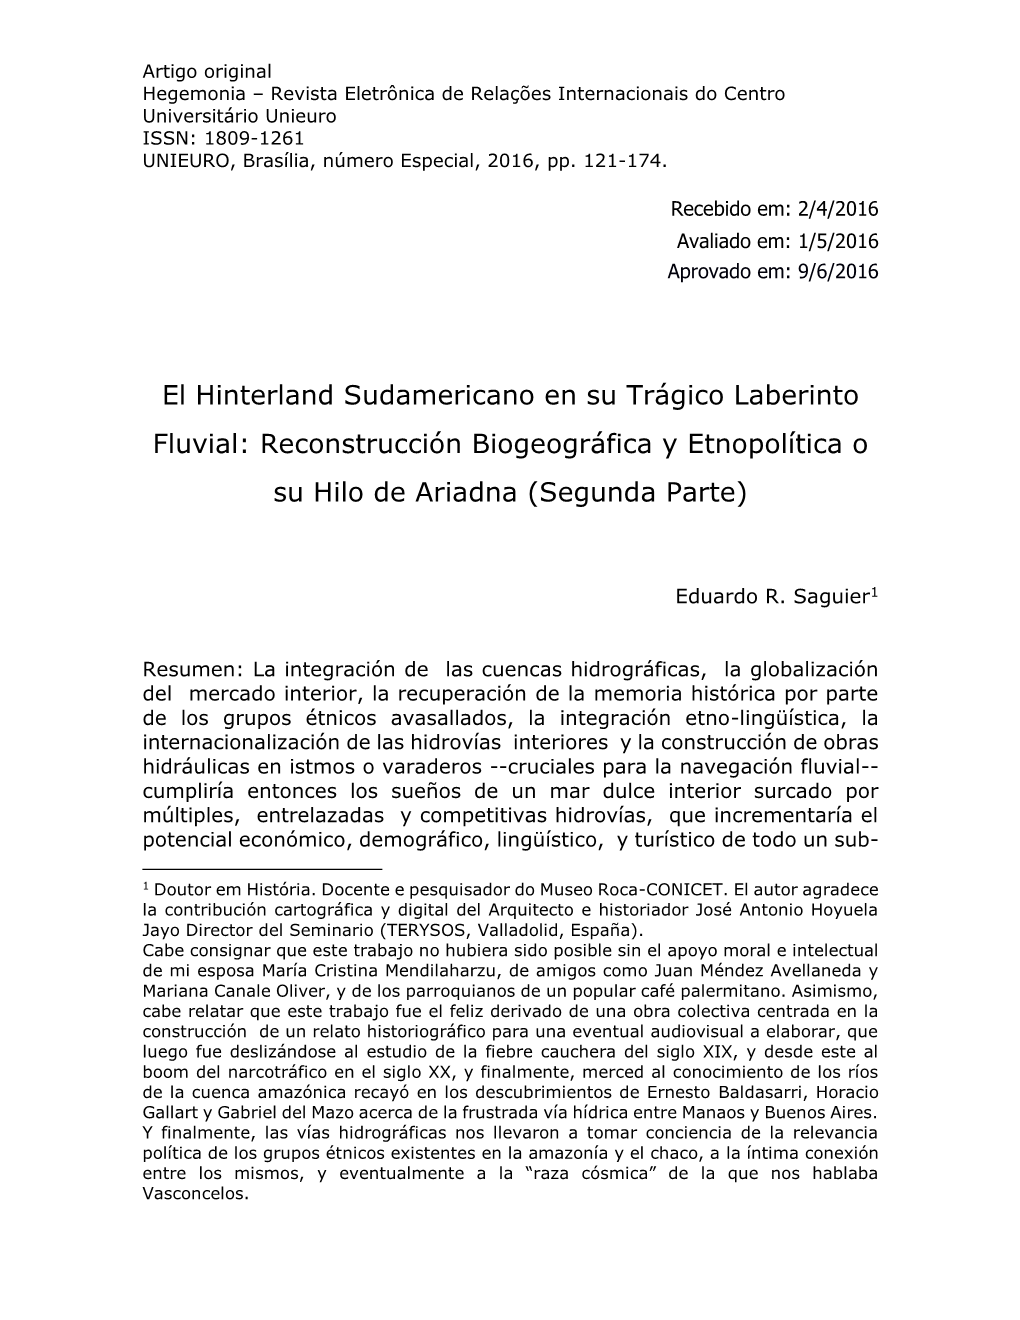 El Hinterland Sudamericano En Su Trágico Laberinto Fluvial: Reconstrucción Biogeográfica Y Etnopolítica O Su Hilo De Ariadna (Segunda Parte)